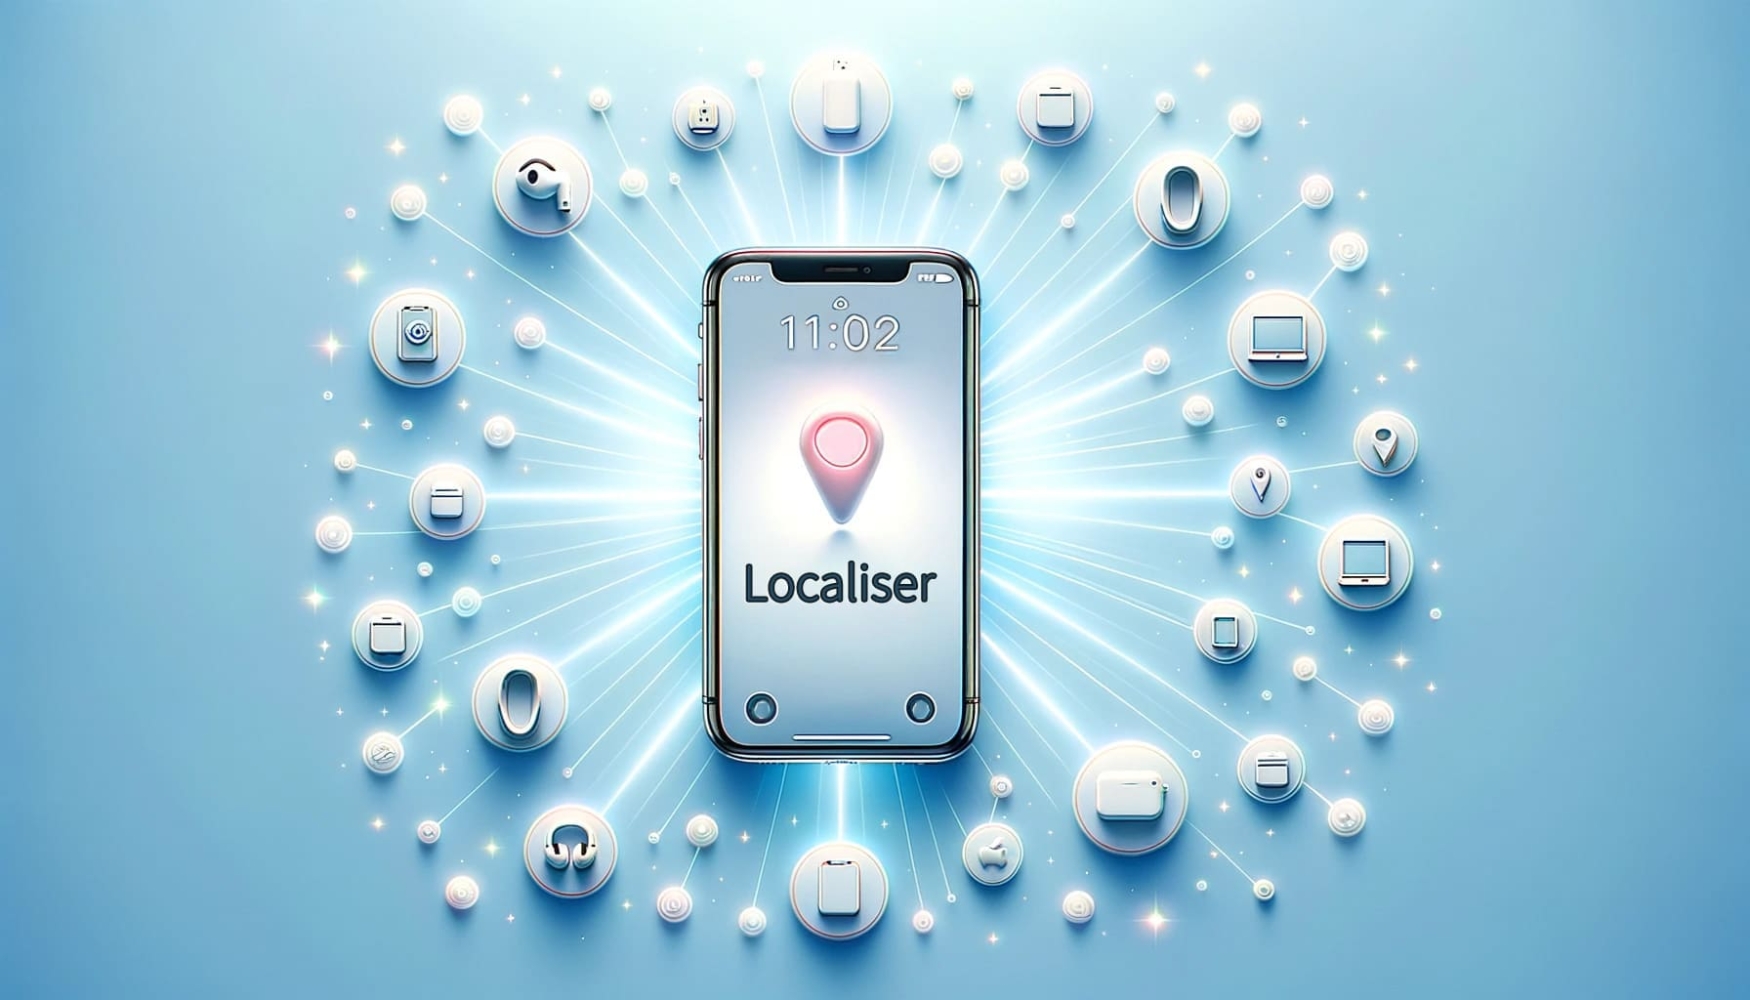 Un iPhone avec l'interface "Find My" relié par des rayons radiants à des icônes d'autres appareils Apple sur un fond bleu clair